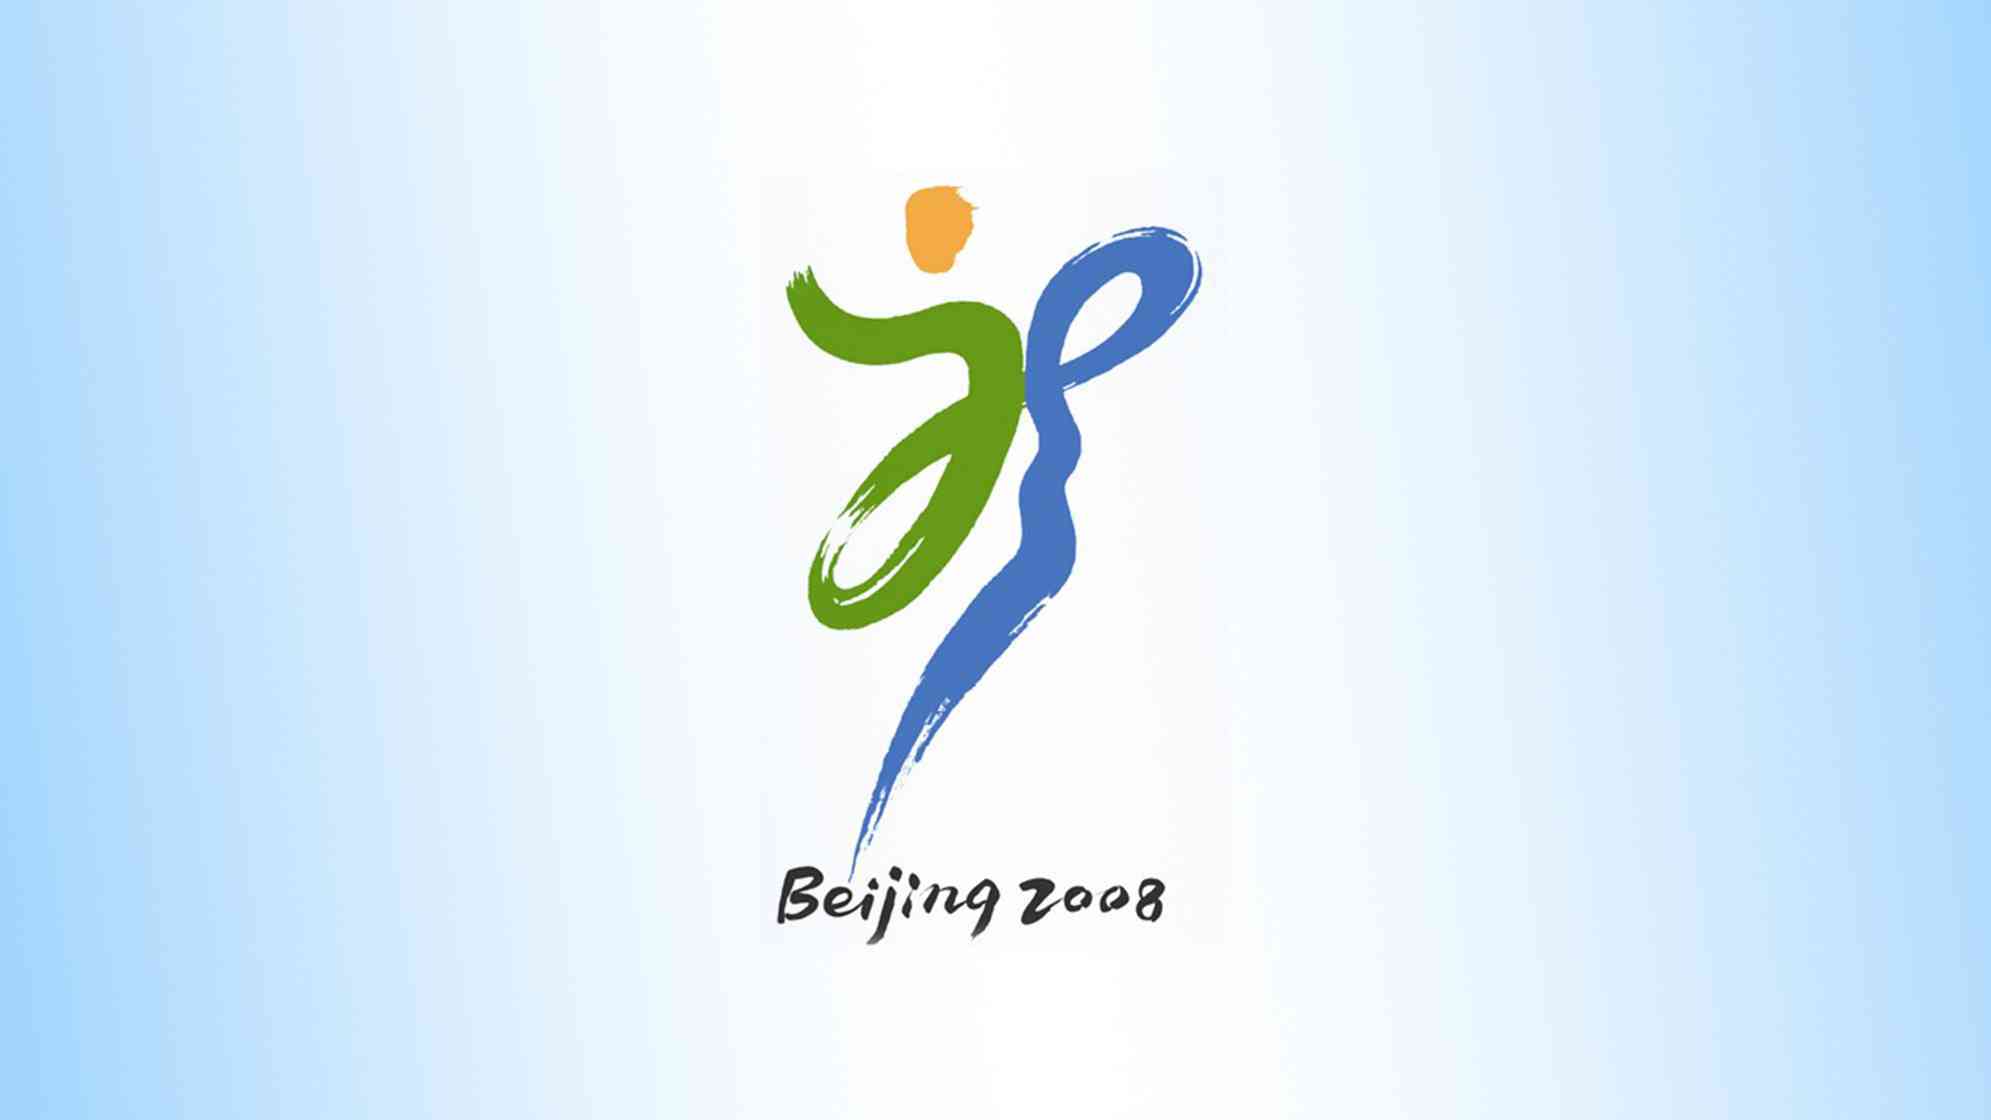 北京2008奥运会会徽设计图片素材